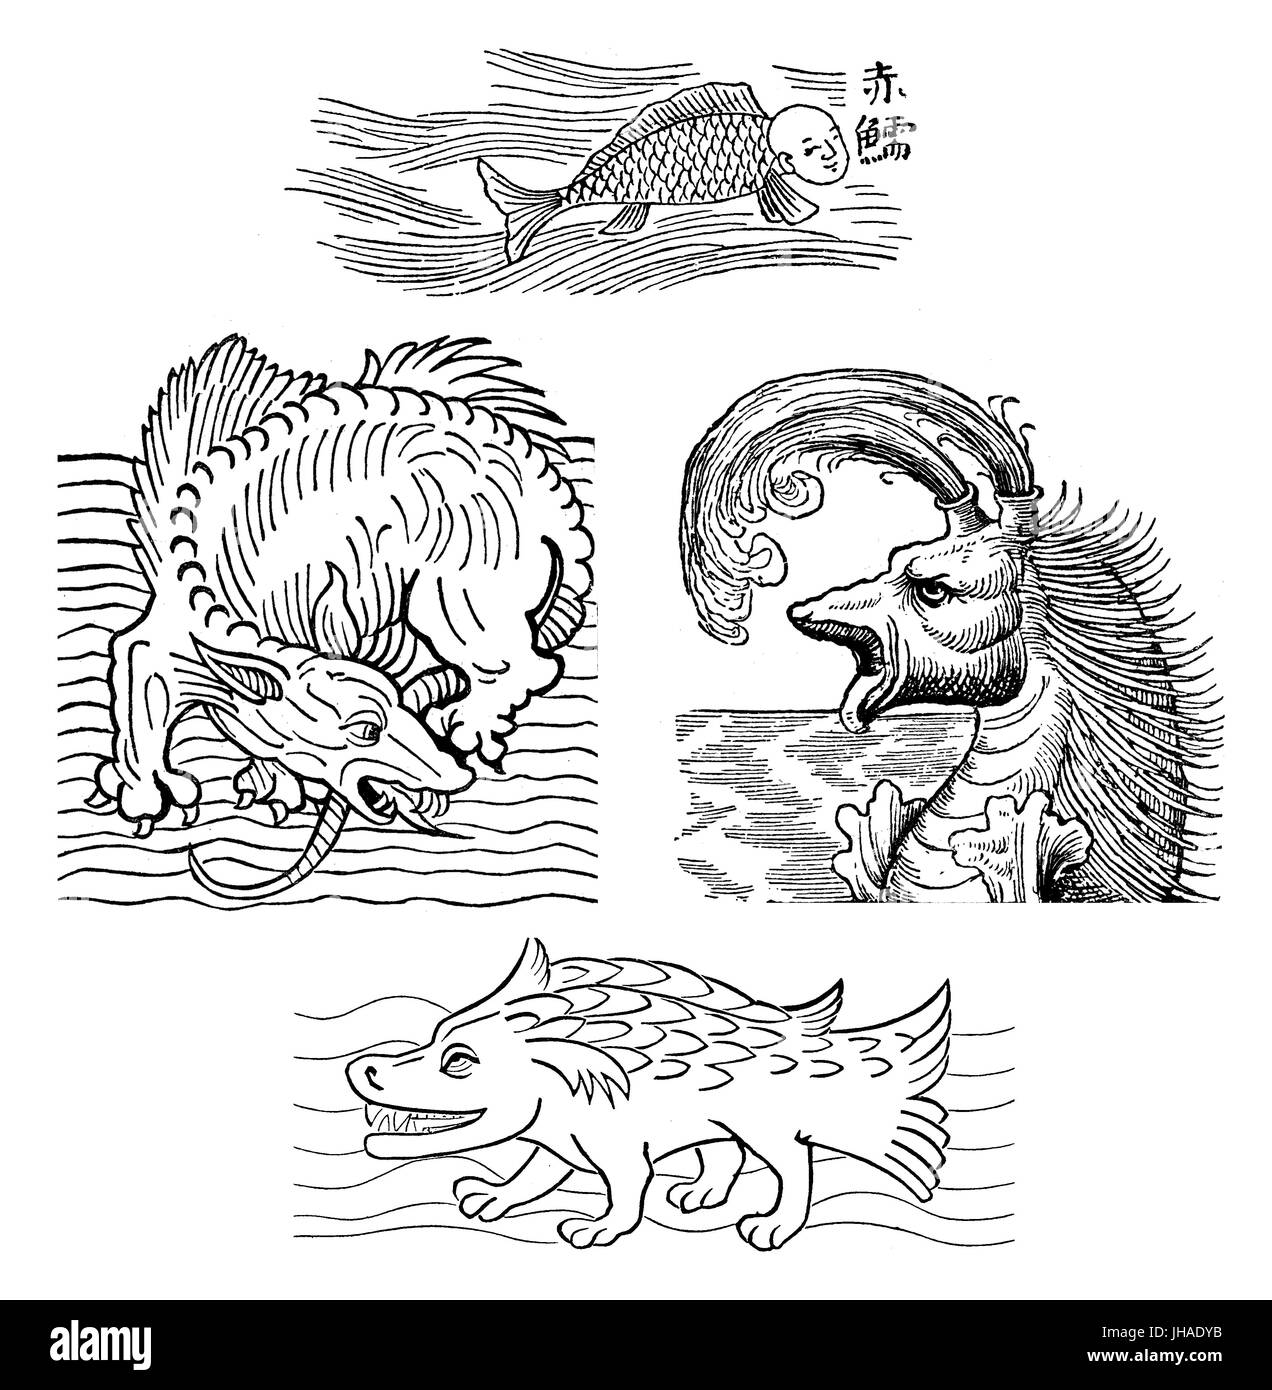 La mer mythique, monters gravure médiévale Banque D'Images